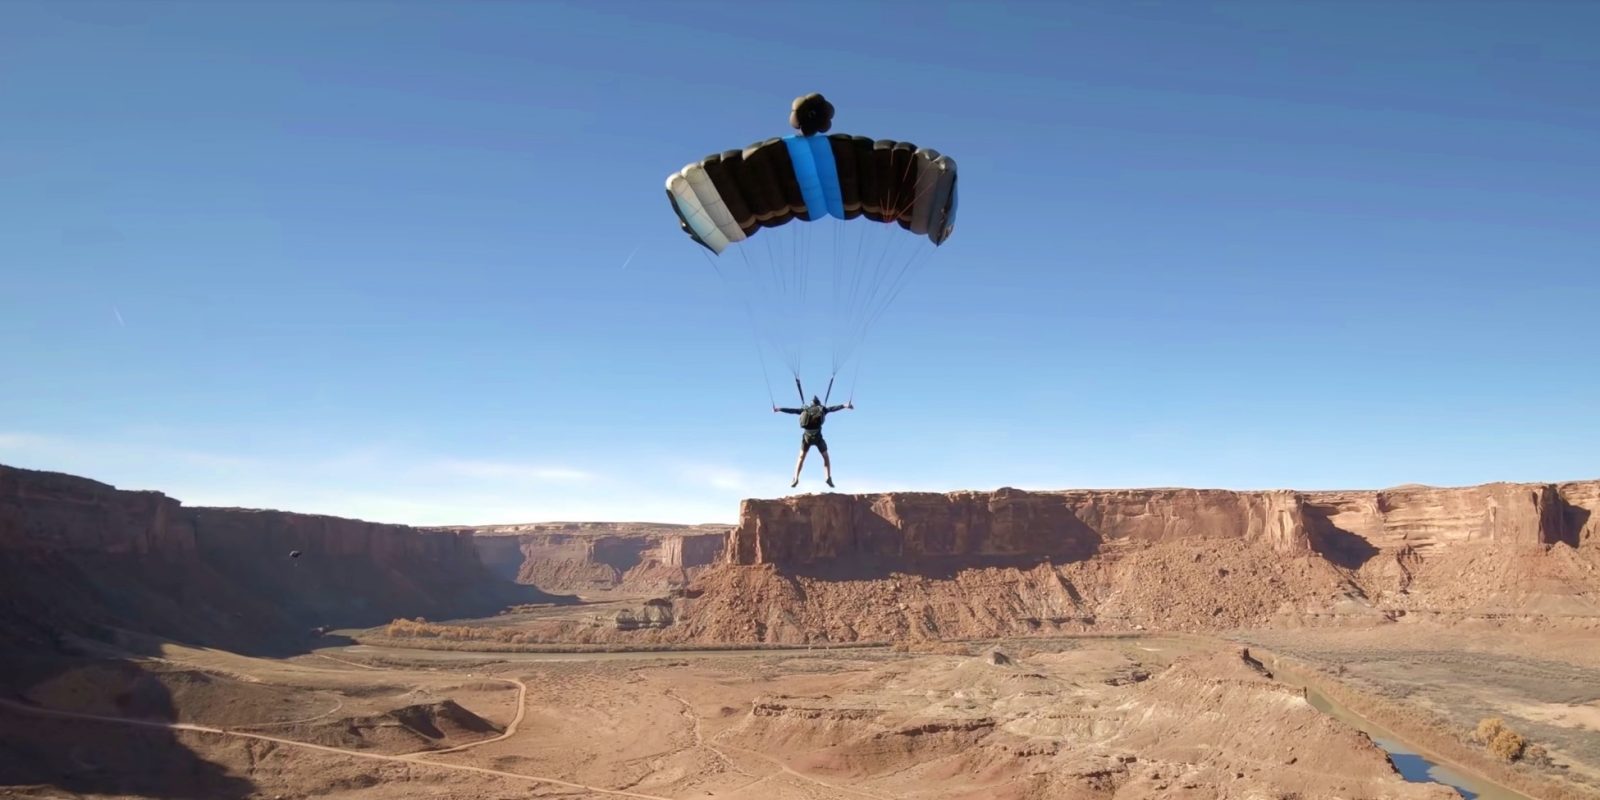 FPV drone flies in between parachute strings of BASE jumper